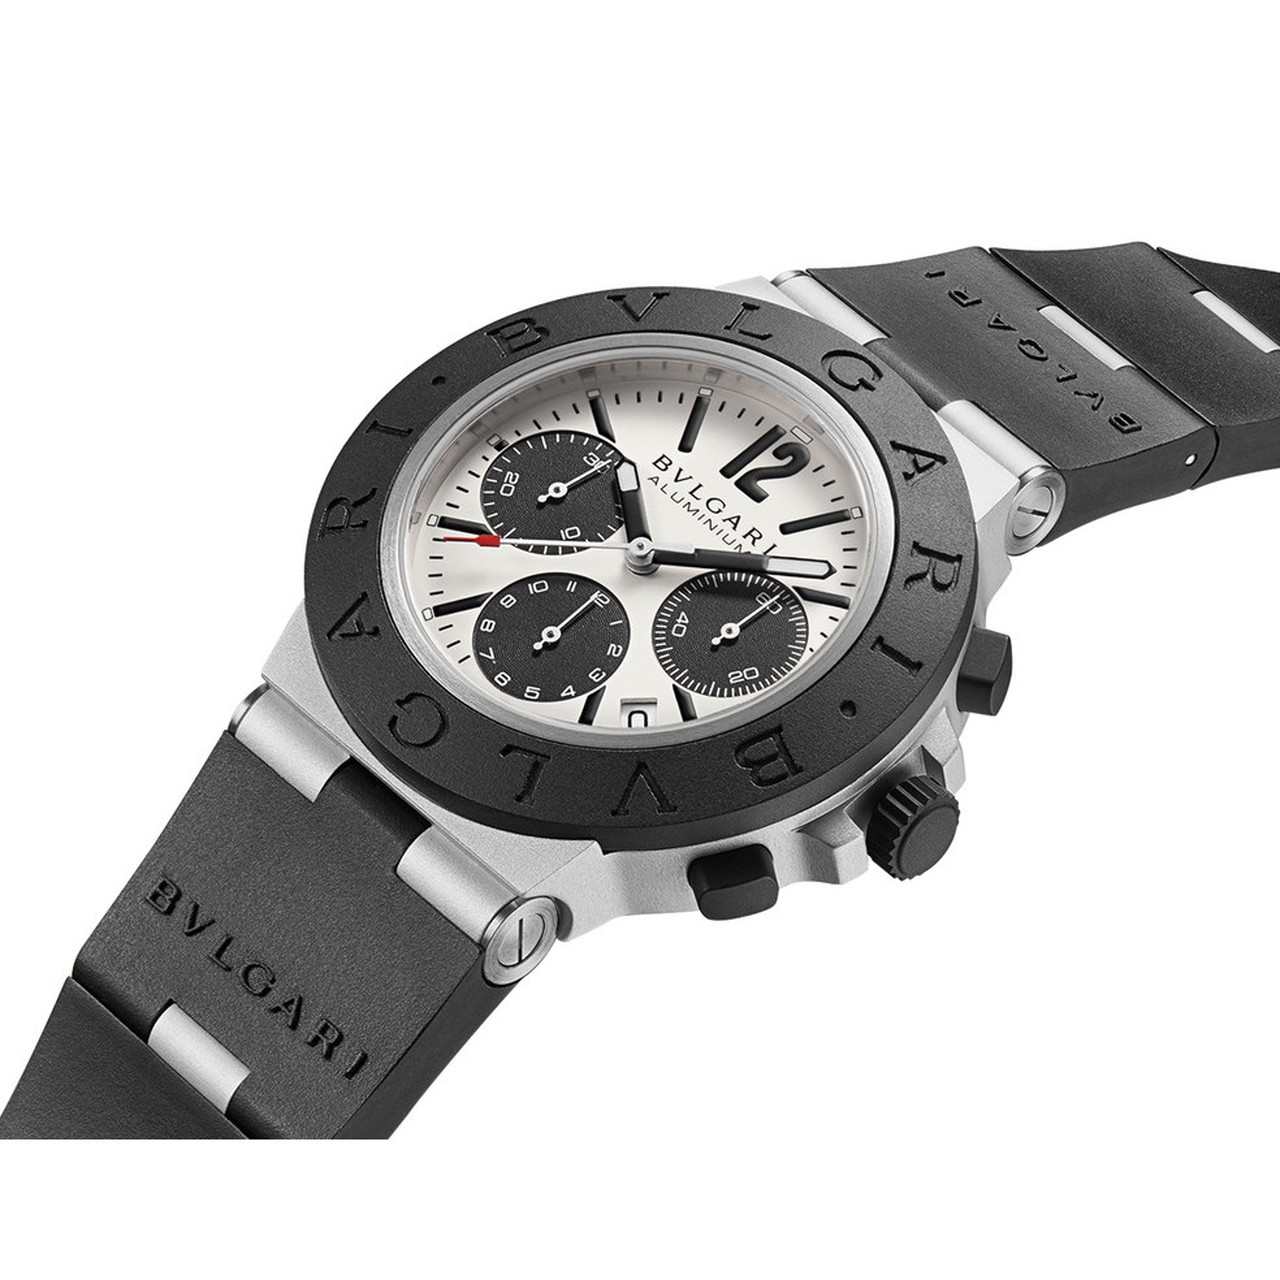 ブルガリ(BVLGARI) ブルガリ アルミニウム クロノグラフ | カミネ | ブランド腕時計の正規販売店紹介サイトGressive/グレッシブ